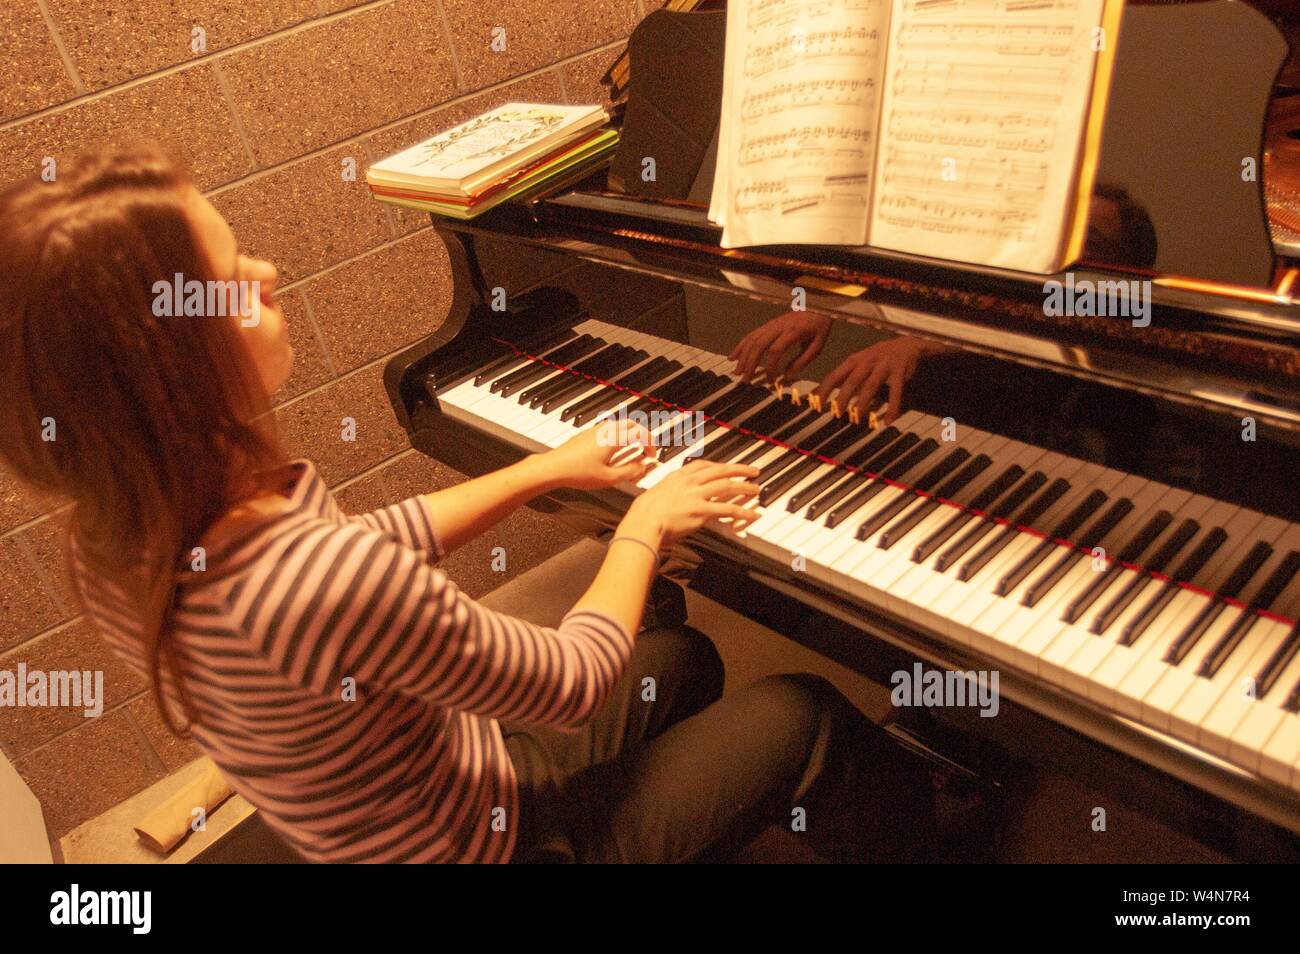 Hohe Weitwinkelaufnahme eines Musikers Klavier spielen, in einer Praxis, die Zimmer an der Mattin Center, an der Johns Hopkins Universität, Baltimore, Maryland, 5. Februar 2006. Vom Homewood Sammlung Fotografie. () Stockfoto